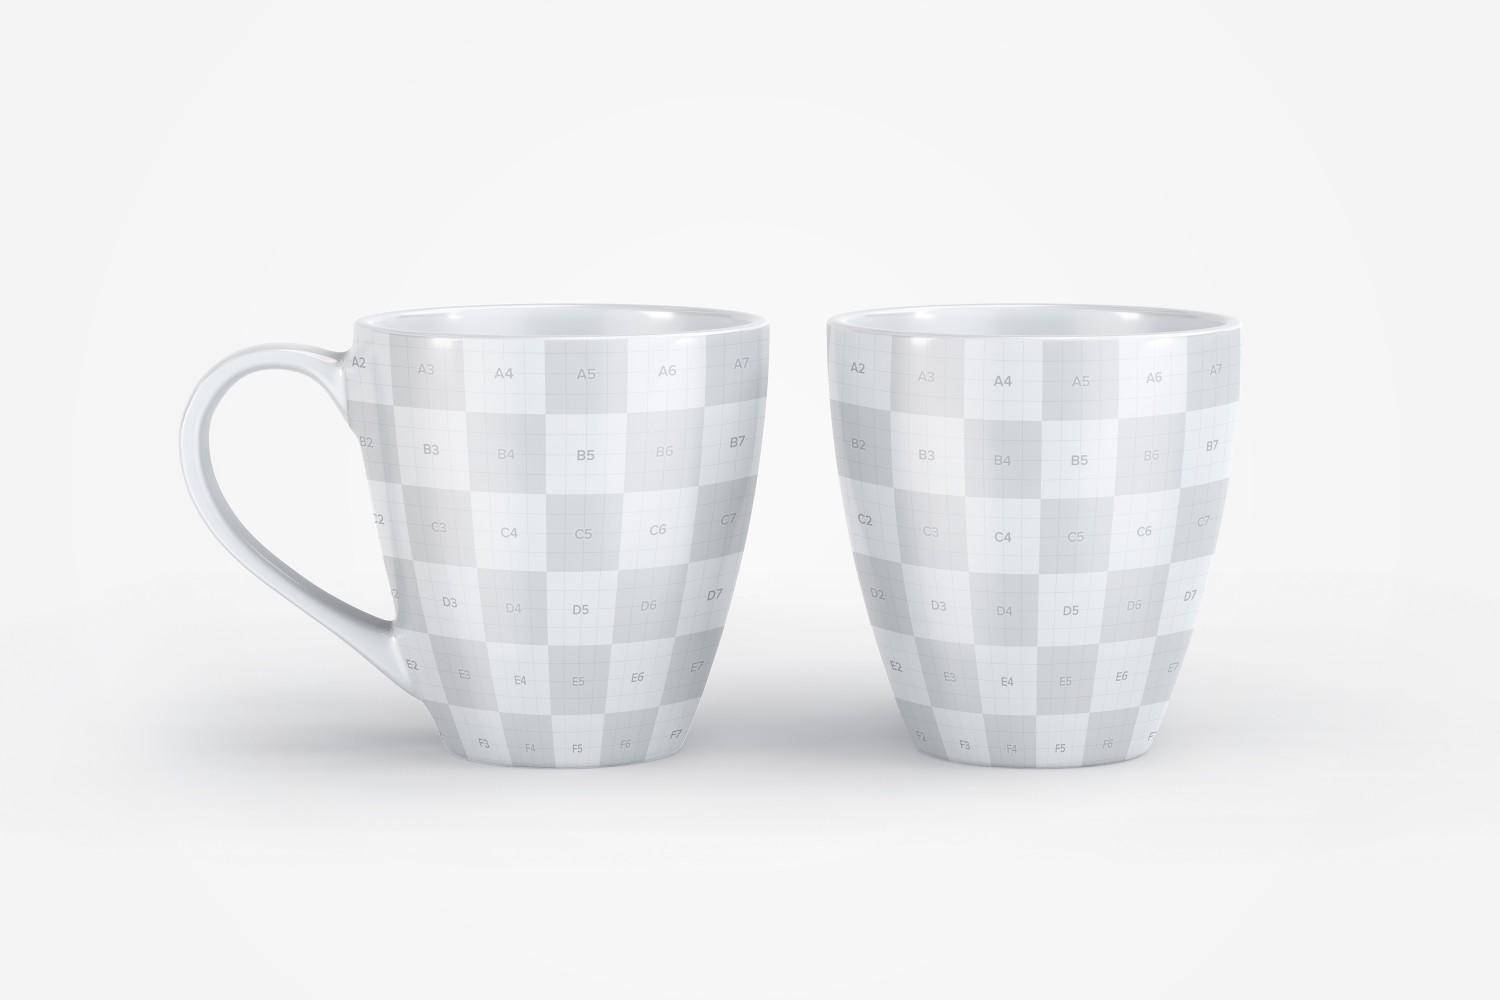 宽口马克杯陶瓷杯图案设计展示第一素材精选v10 Mug Mockup 10插图(1)